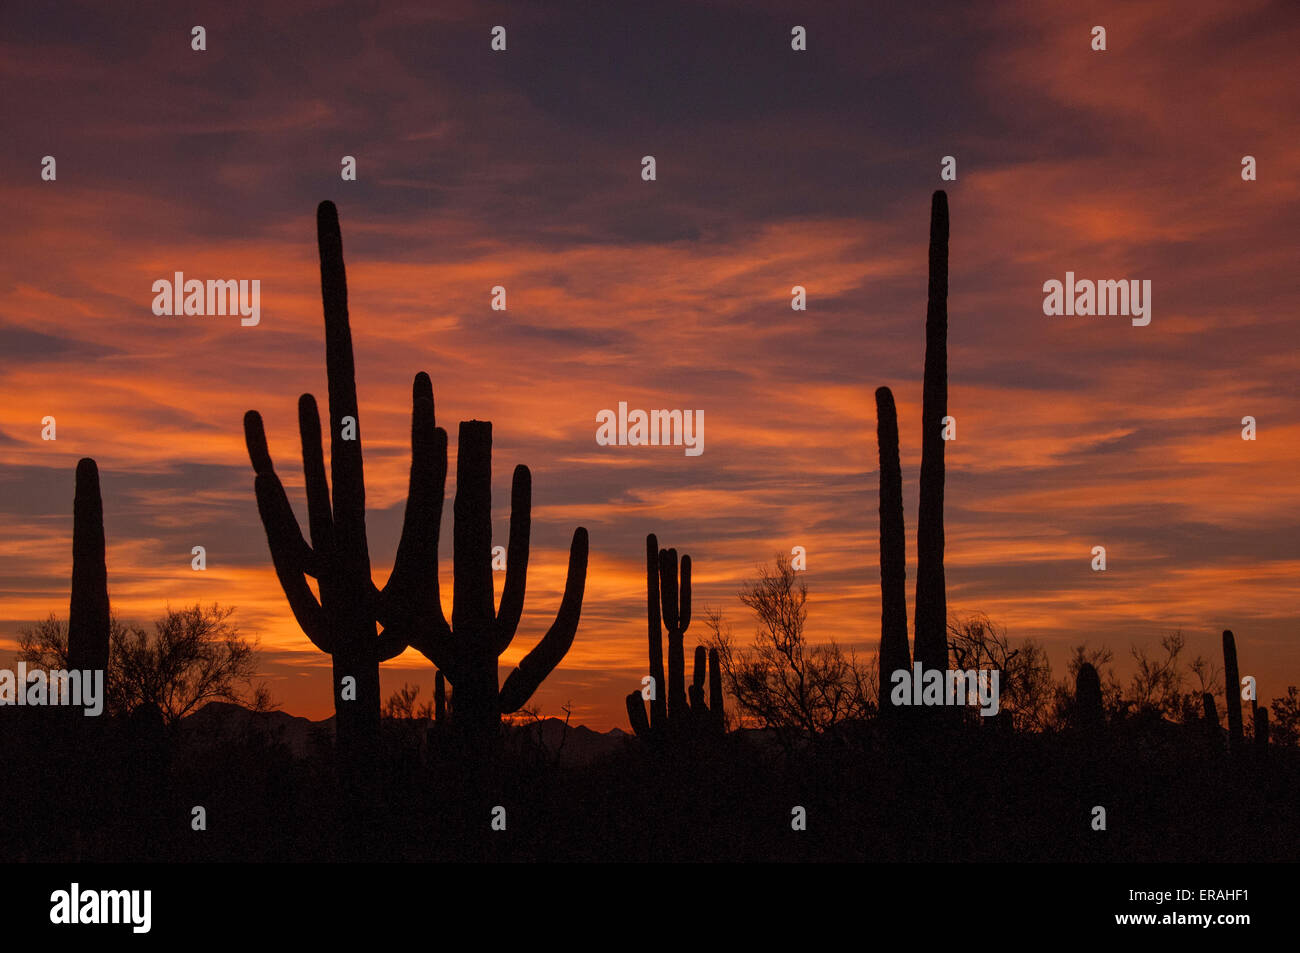 Gigantischen Saguaro Kaktus sind gegen einen Sonoran Wüste Sonnenuntergang Silhouette. Saguaro-Nationalpark, in der Nähe von Tucson, Arizona. Stockfoto